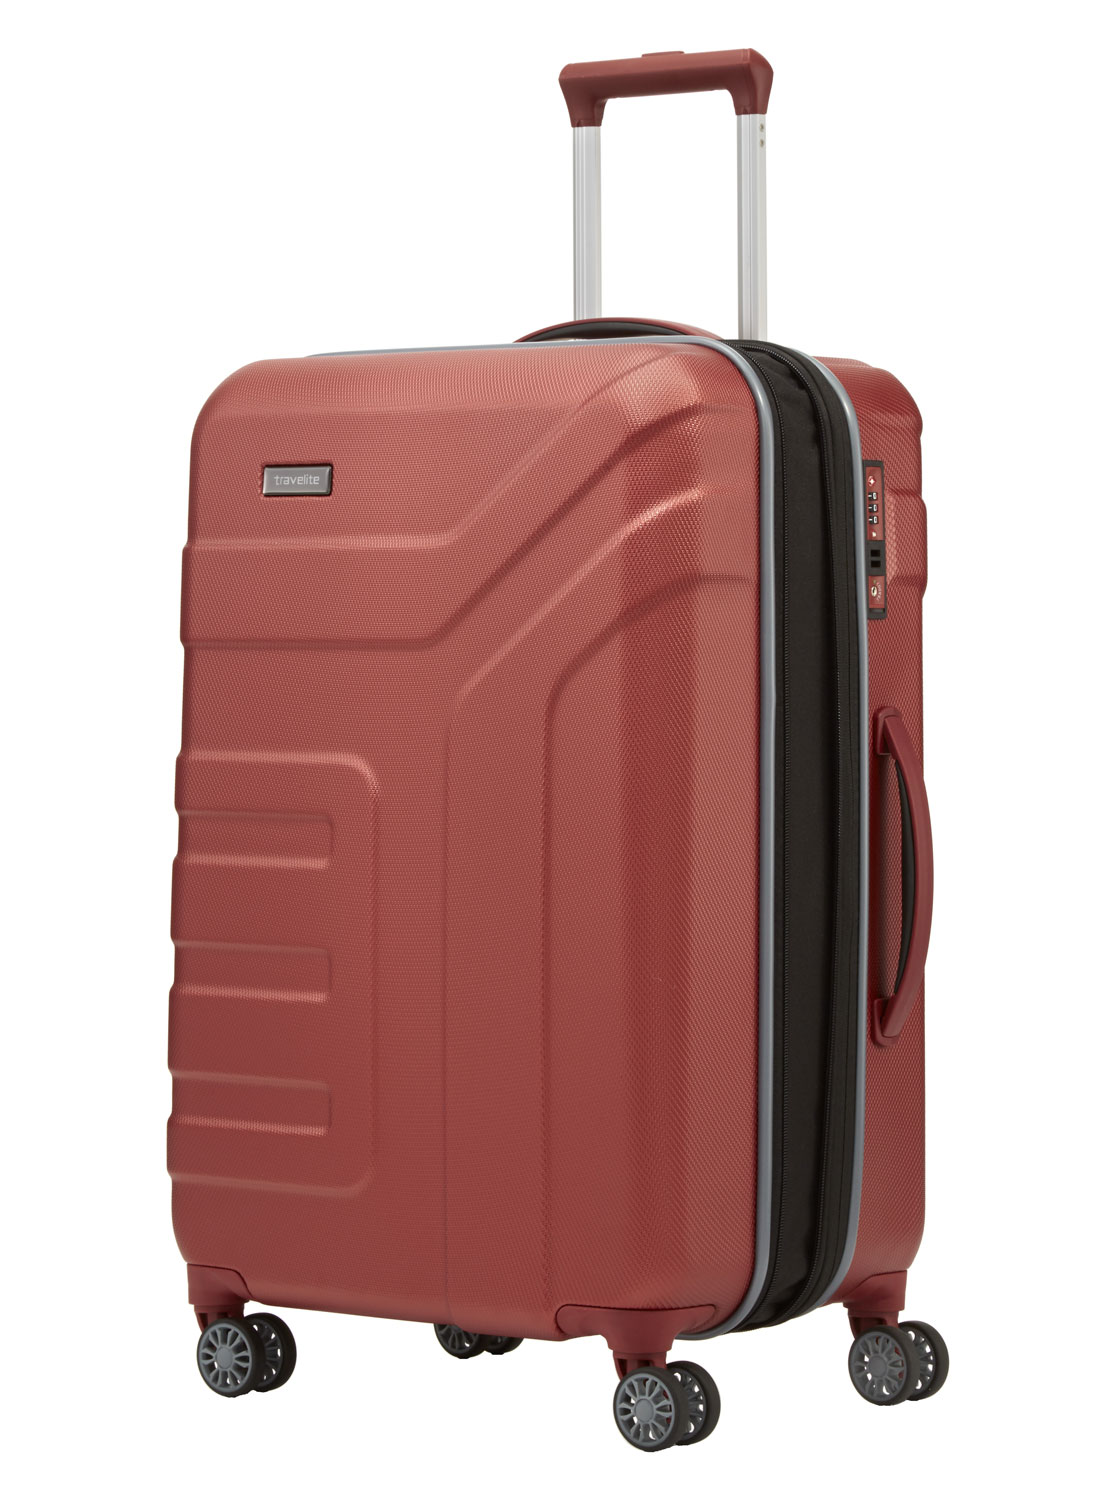 Travelite Vector 4w Trolley M erw. | jetzt online kaufen auf Koffer.de ✓